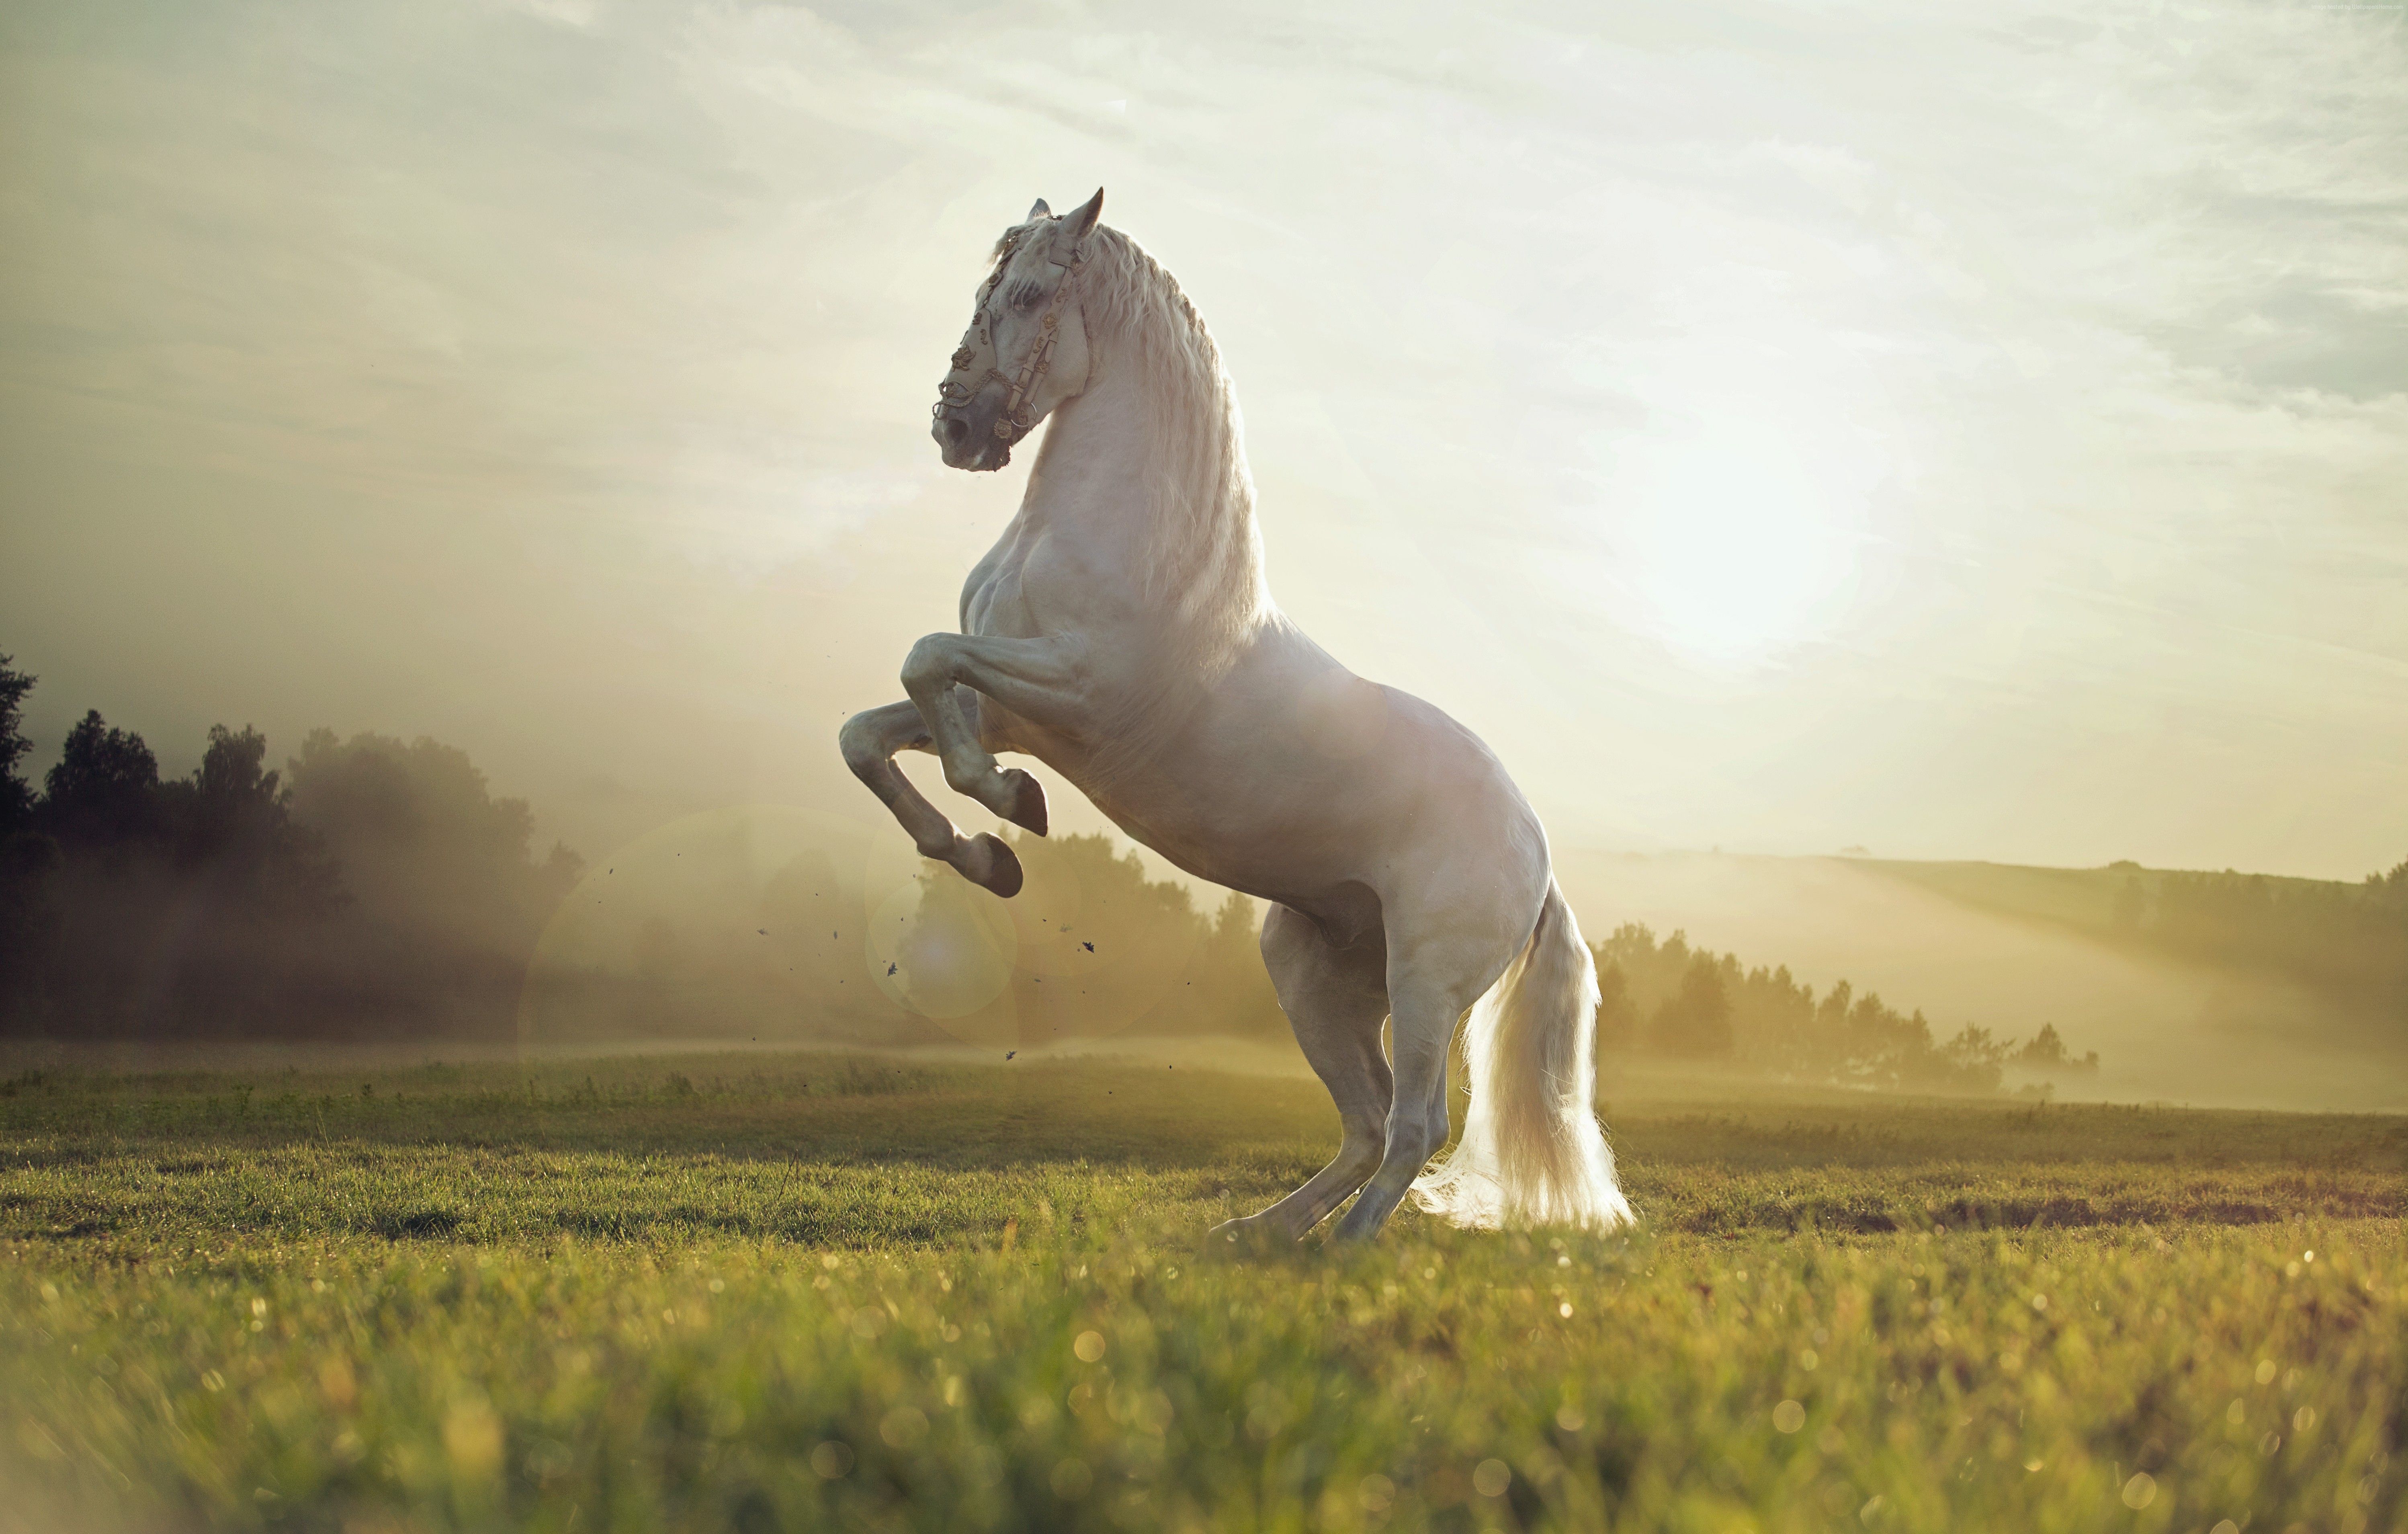 Horse Wallpaper, Animals / Pets: Horse, Cute Animals, Sunset. Cute. Horse wallpaper, Beautiful horses, Horses